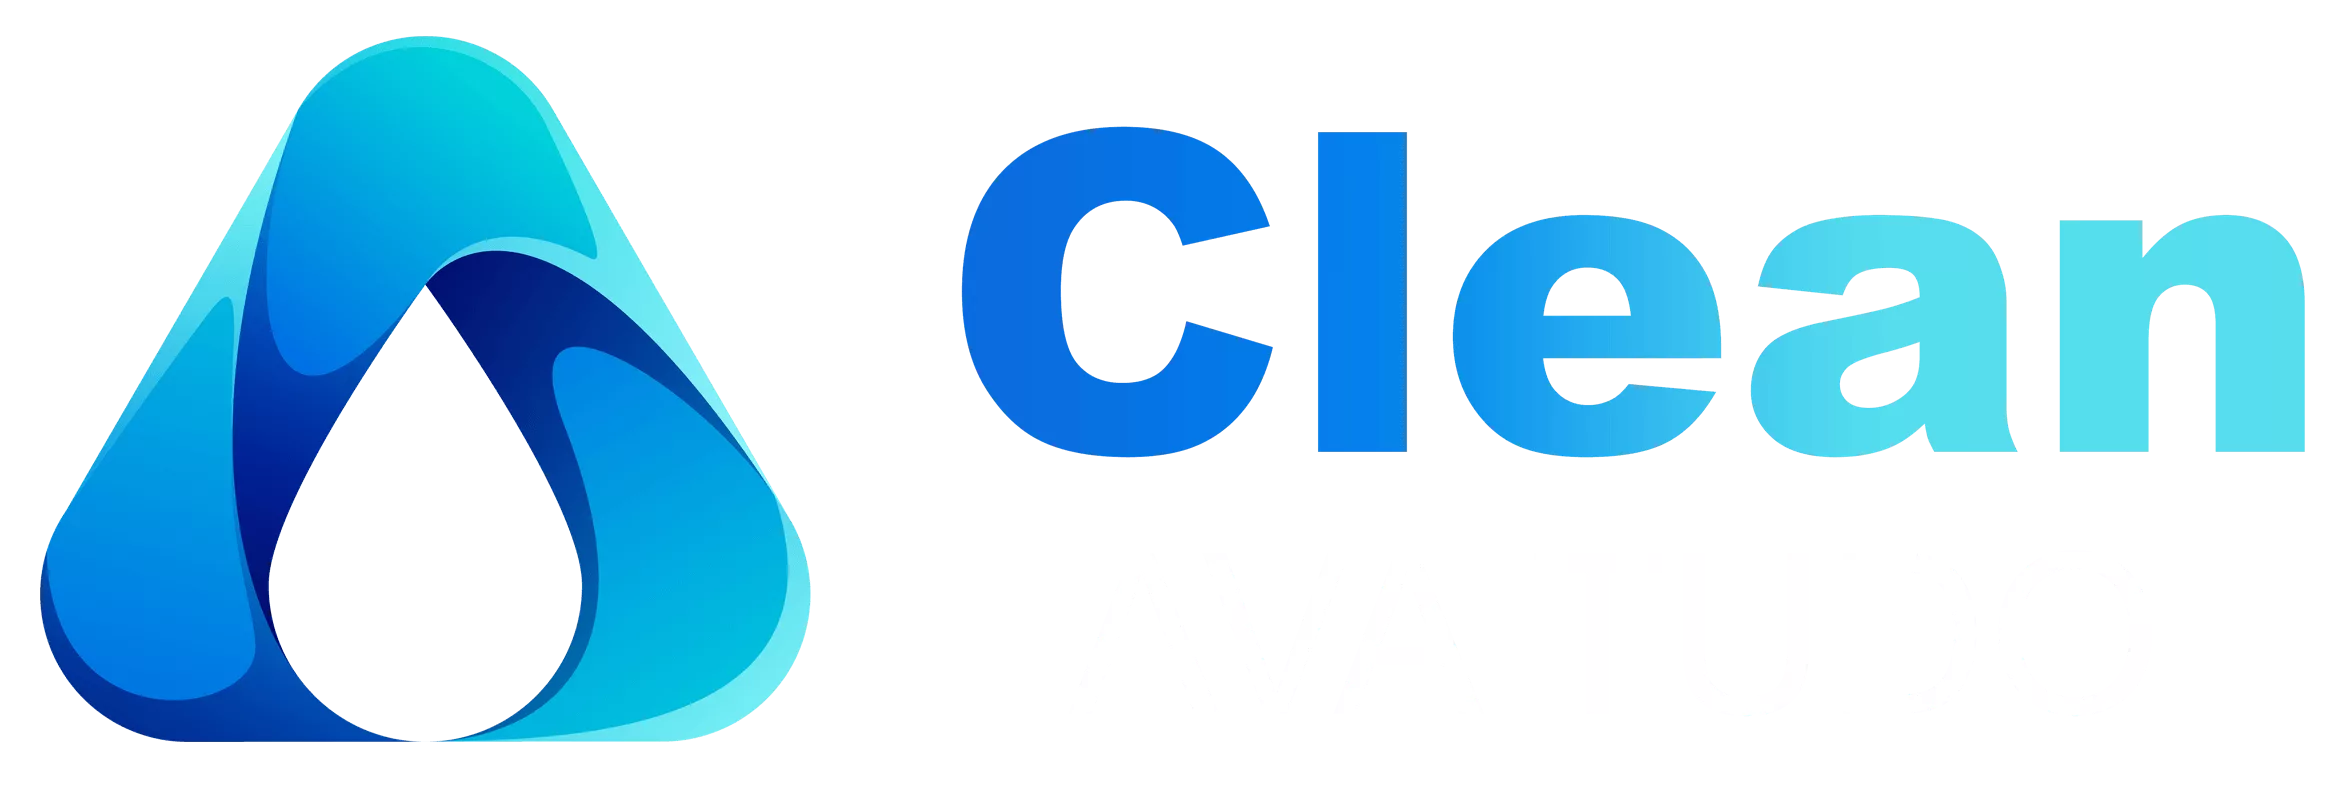 Clean Lava Tudo - Logo Limpeza de Sofá 3